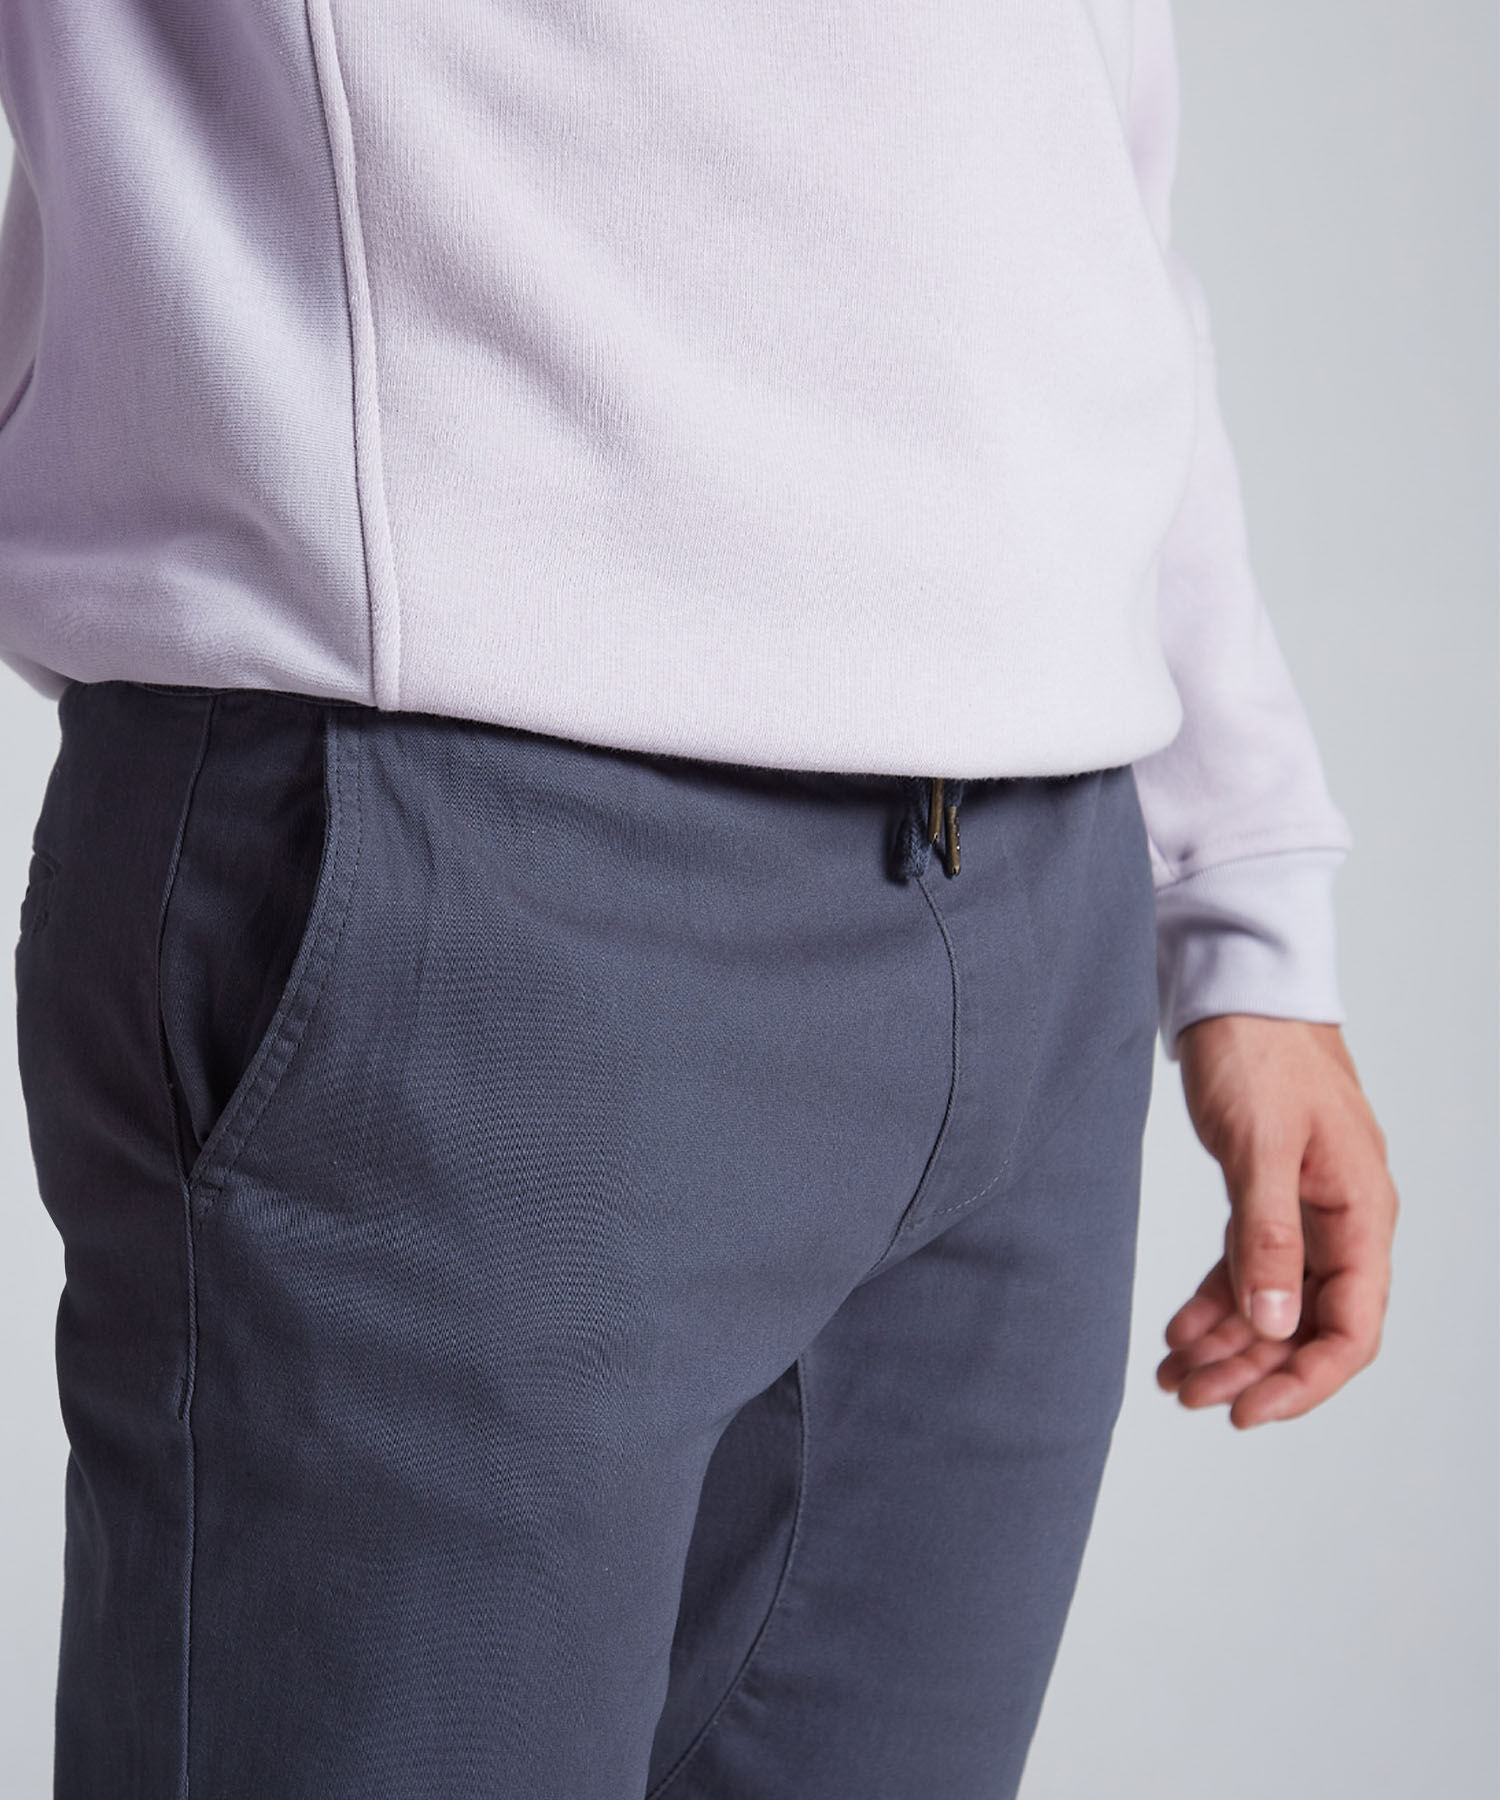 Pantalones básicos para hombre